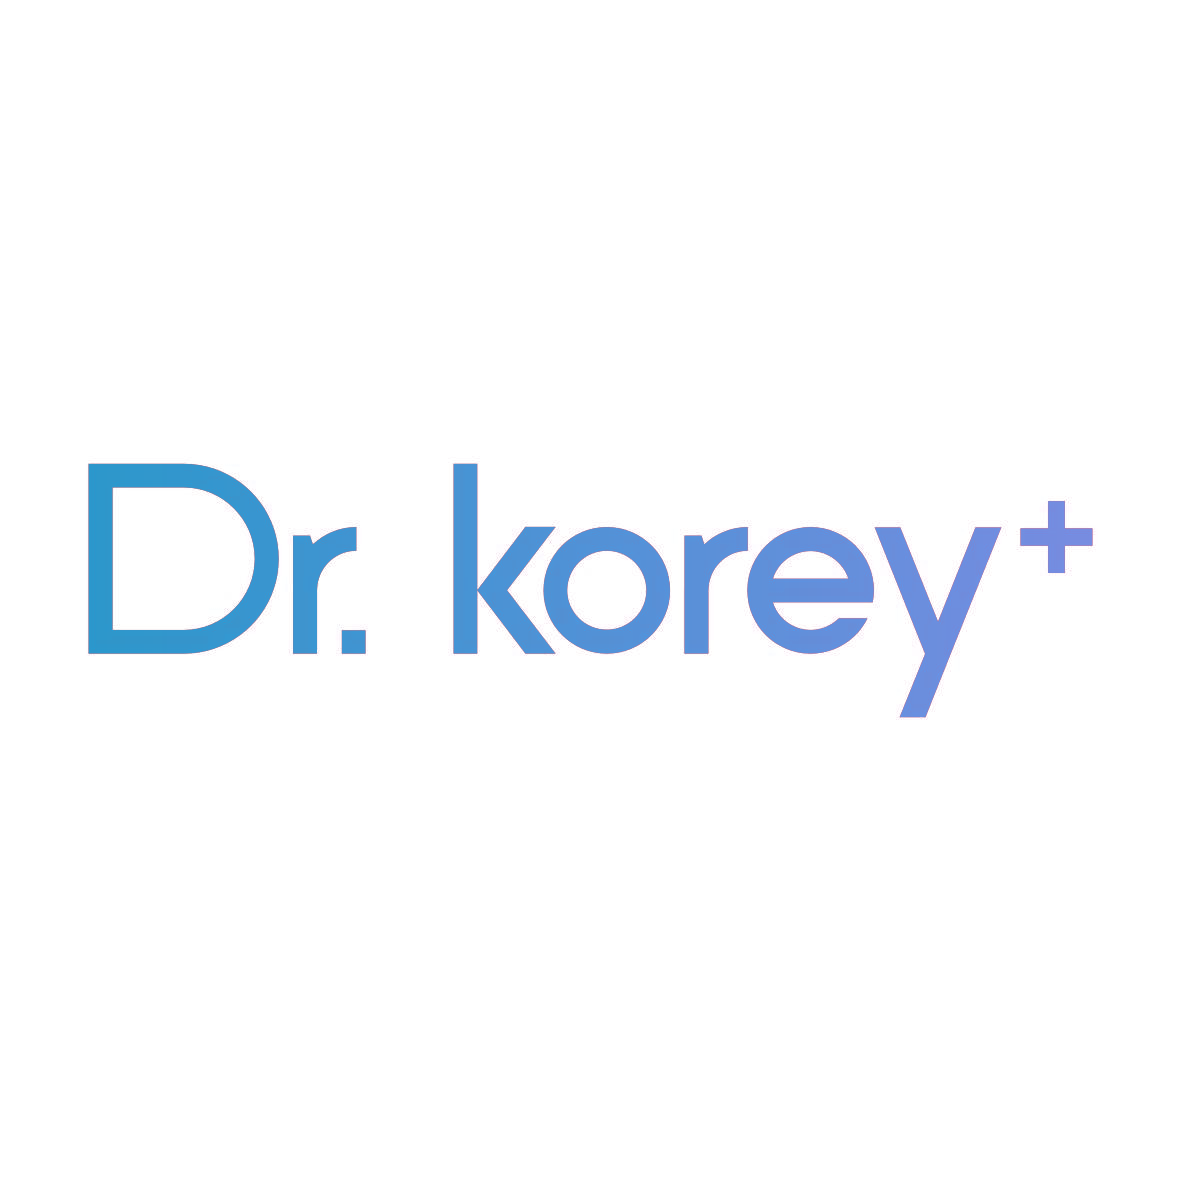 DR.KOREY+